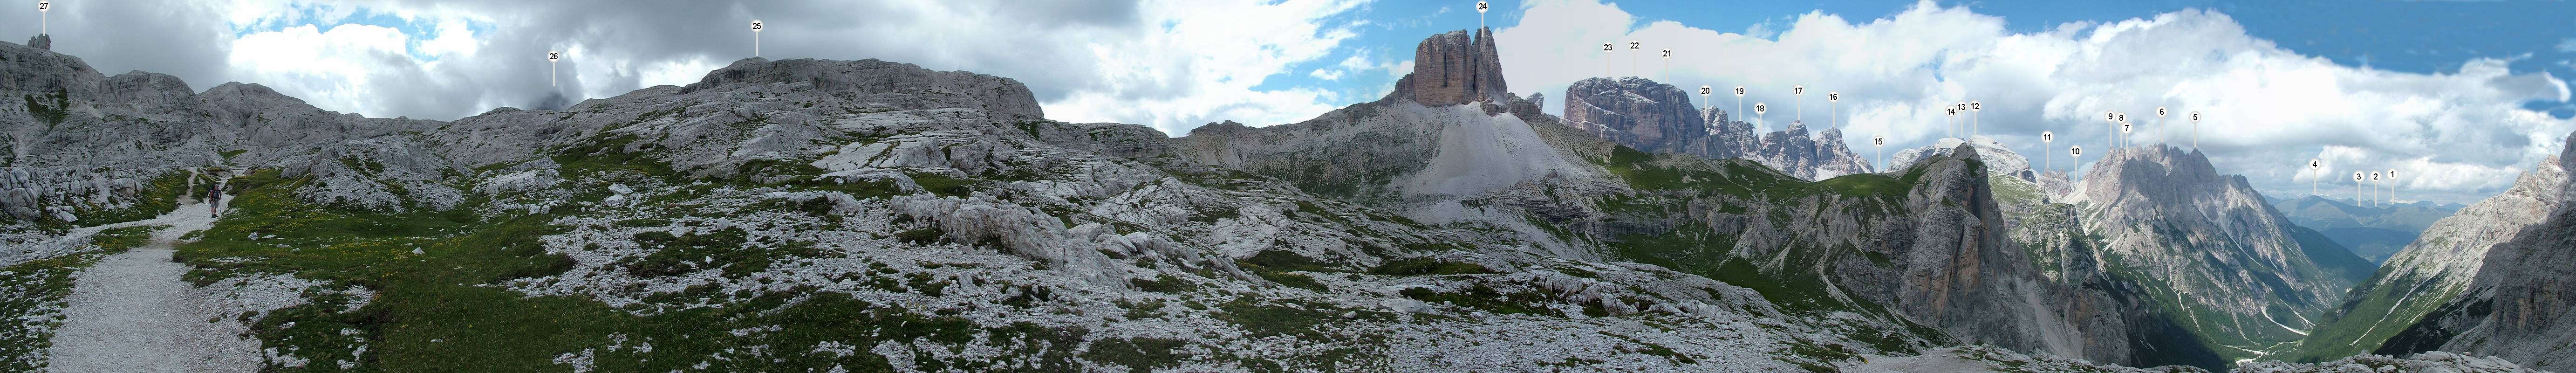 Nachdem wir eine Hochebene bei etwa 2400m erreicht haben, verlangt der Ausblick nach einem Panoramafoto. Folgende Berge sind zu sehen: (1) ohne Namen [2441m], (2) Ternegg [2422m], (3) Spitzkinkele [2507m], (4) Toblacher Pfannhorn [2663m], (5) Ostgipfel [Cima Est, 2907m], (6) Haunold [Rocca dei Baranci, 2966m], (7) Kohlalplkofel [2543m], (8) Kohlalplspitzen [2724m], (9) Südgipfel [Cima Süd, 2860m], (10) Birkenschartel [Forc. dei Baranci, 2540m], (11) Birkenschartelturm [Torre dei Baranci, 2922m], (12) Kleiner Birkenkofel [2790m], (13) Birkenkofel [Croda dei Baranci, 2922m], (14) Morgenkopf [M. Mattina, 2493m], (15) Lückeleschartl [Forc. del Lago, 2345m], (16) Nordl Nord [2817m], (17) Südl Süd [2848m], (18) Bullscharte [Forc. Bulla, 2665m], (19) Schwalbenkofel [Croda dei Rondoi, 2769m], (20) Schwalbenjöchel [Forc. dei Rondoi, 2672m], (21) Grosser Grande [2826m], (22) Rautkofel [Monte Rudo, 2799m], (23) West.-Ovest [2737m], (24) Schwabenalpenkopf [Torre dei Scarperi, 2687m], (25) Gwengalpenjoch [P.so dell' Alpe Mattina, 2494m], Drei Zinnen [Tre Cime die Lavaredo] - davon die (26) Grosse Zinne [C. Grande, 2999m], (27) Toblinger Knoten [Torre di Toblin, 2617m].